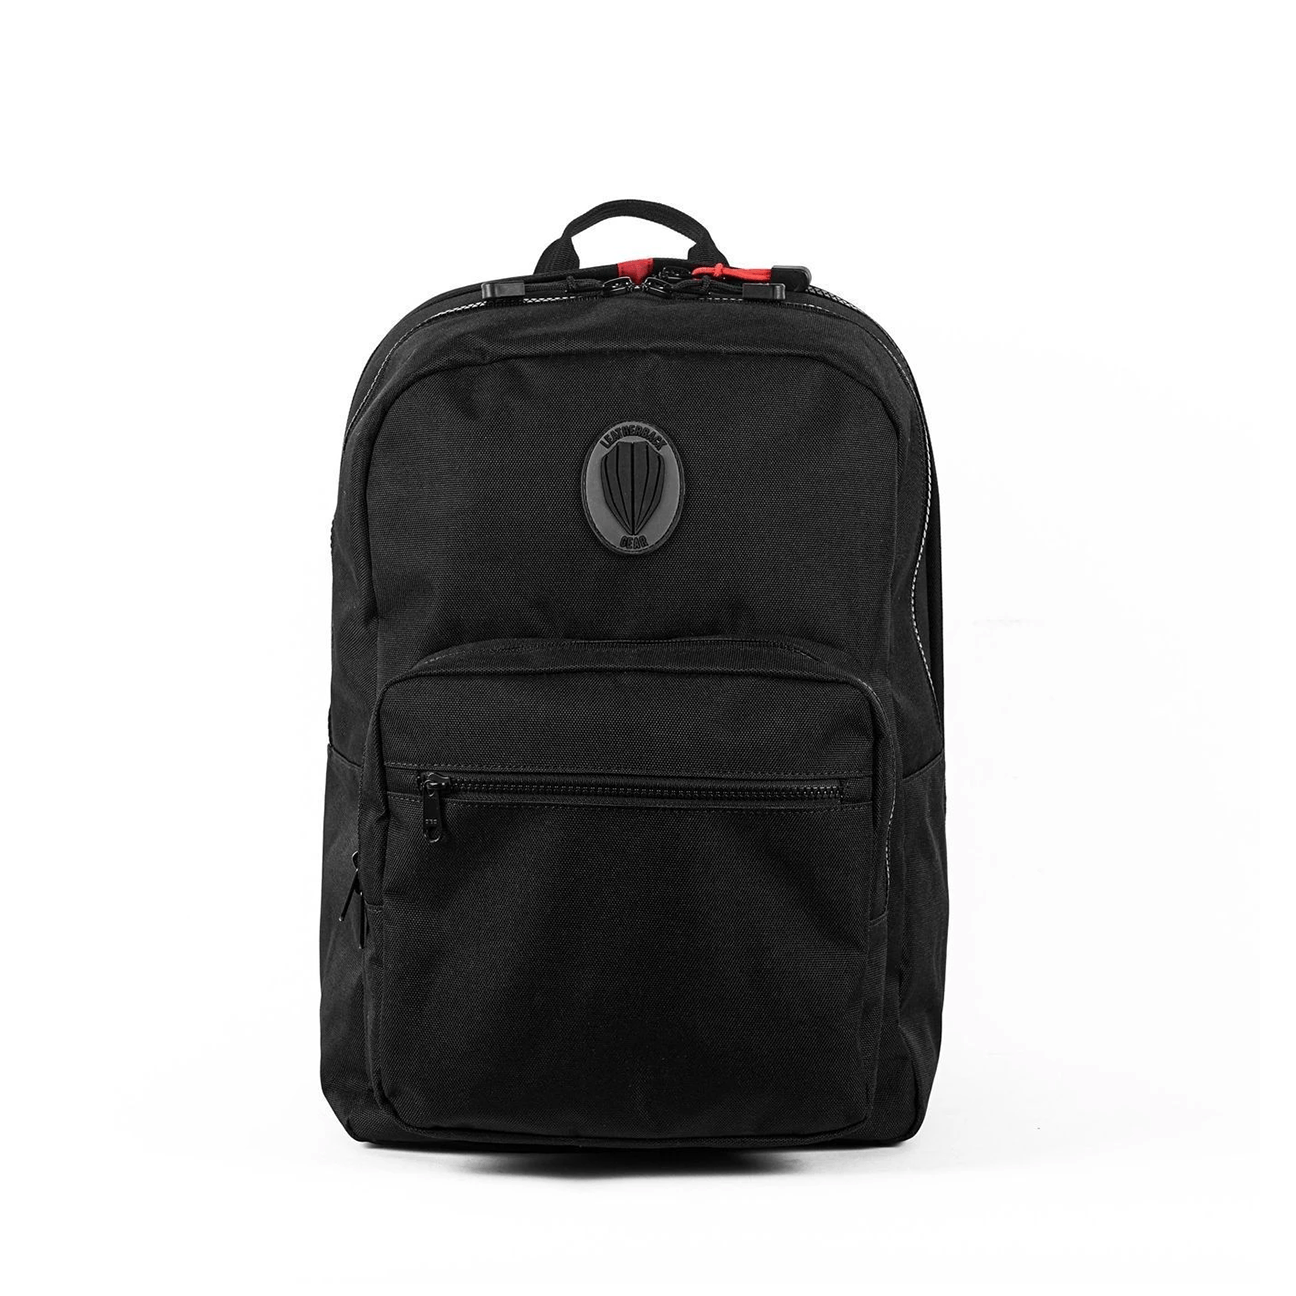 https://www.leatherbackgear.com/cdn/shop/products/sport-one-jr-bulletproof-backpack-leatherback-gear-280312_2000x.png?v=1616048948